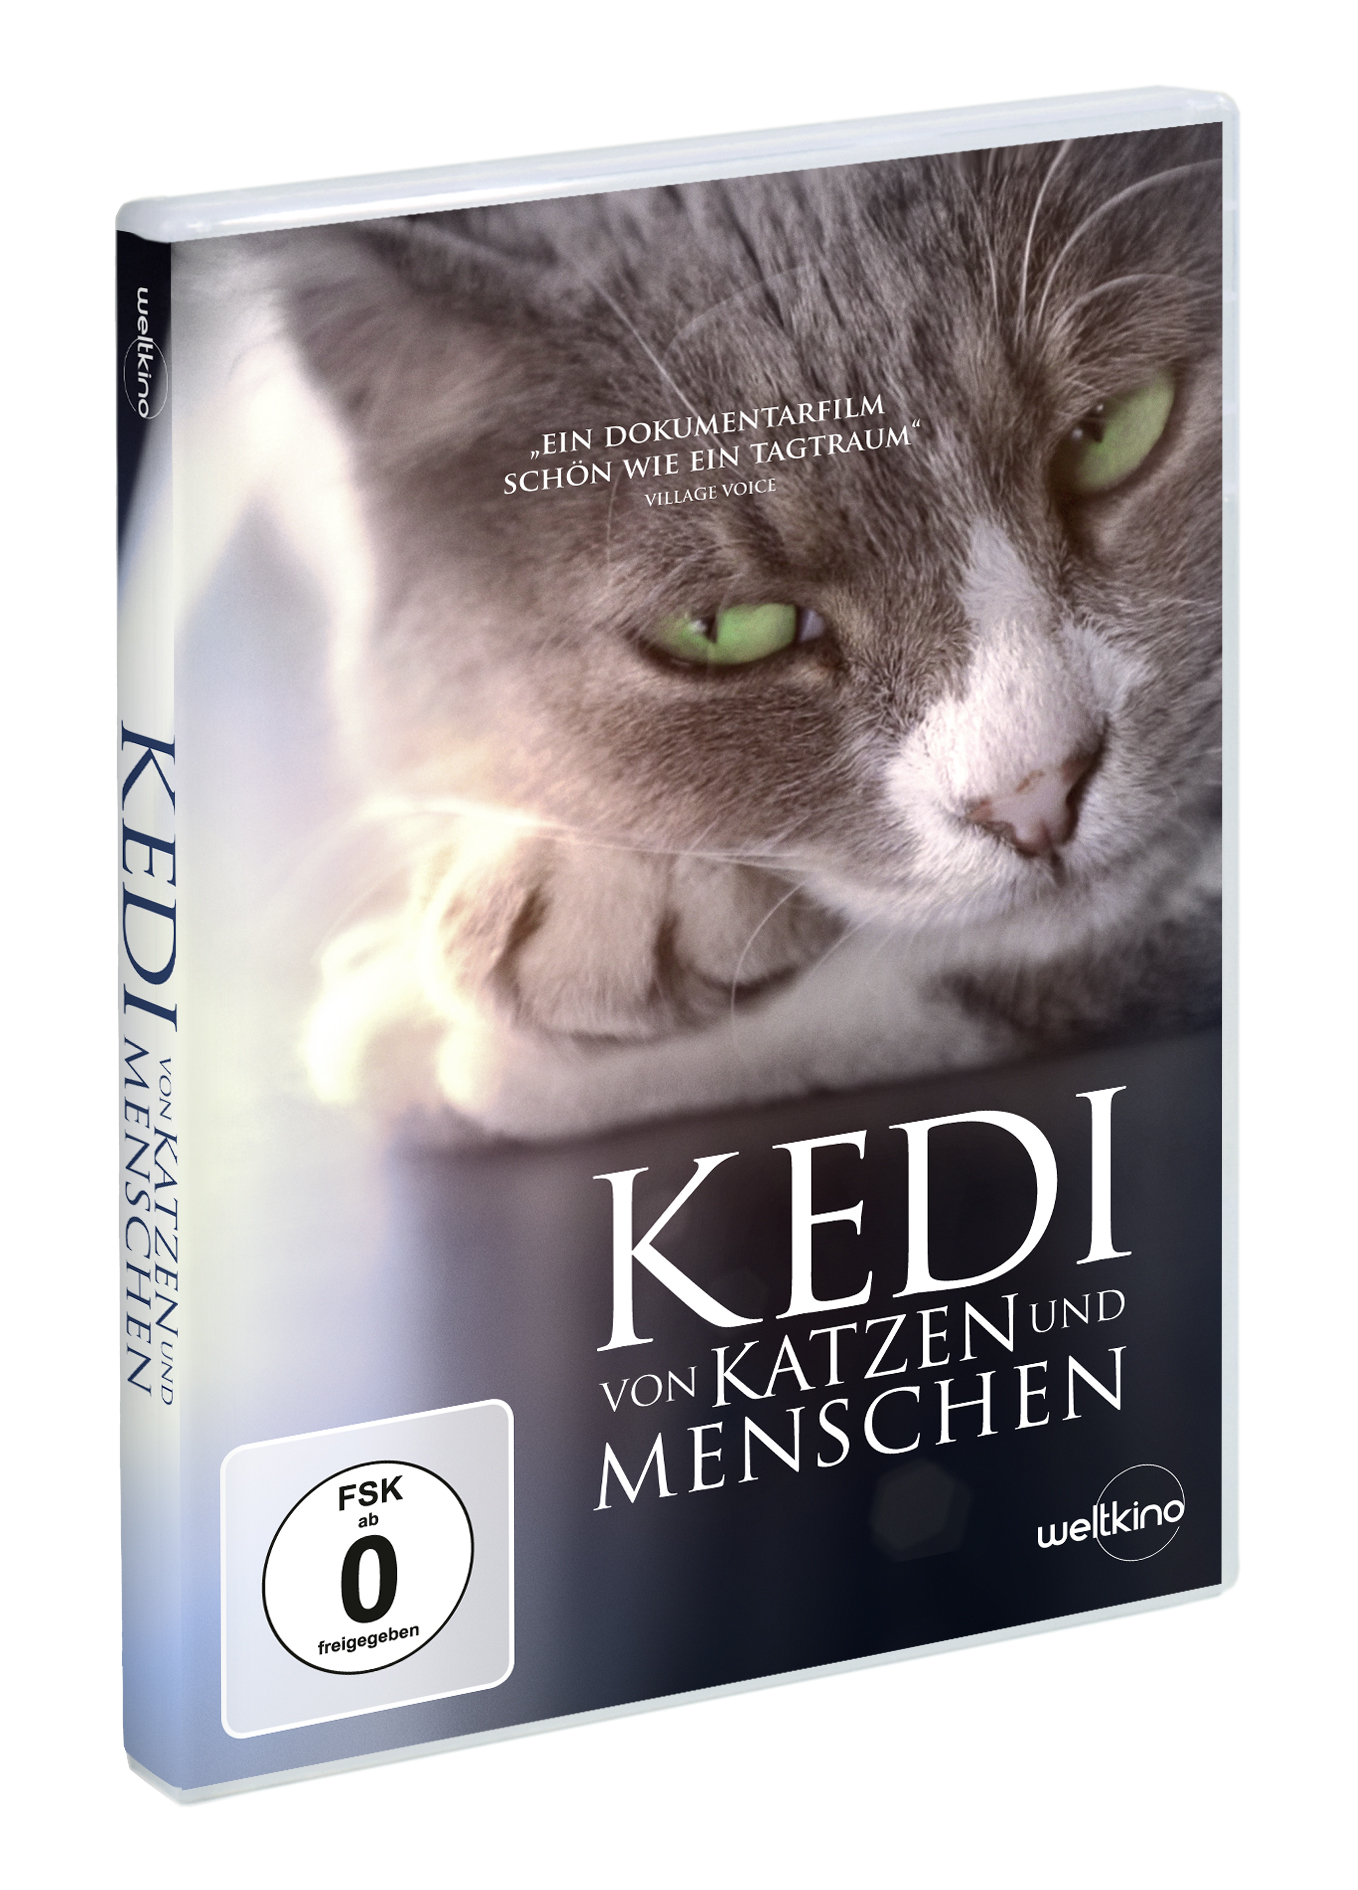 DVD Katzen und Kedi - Von Menschen